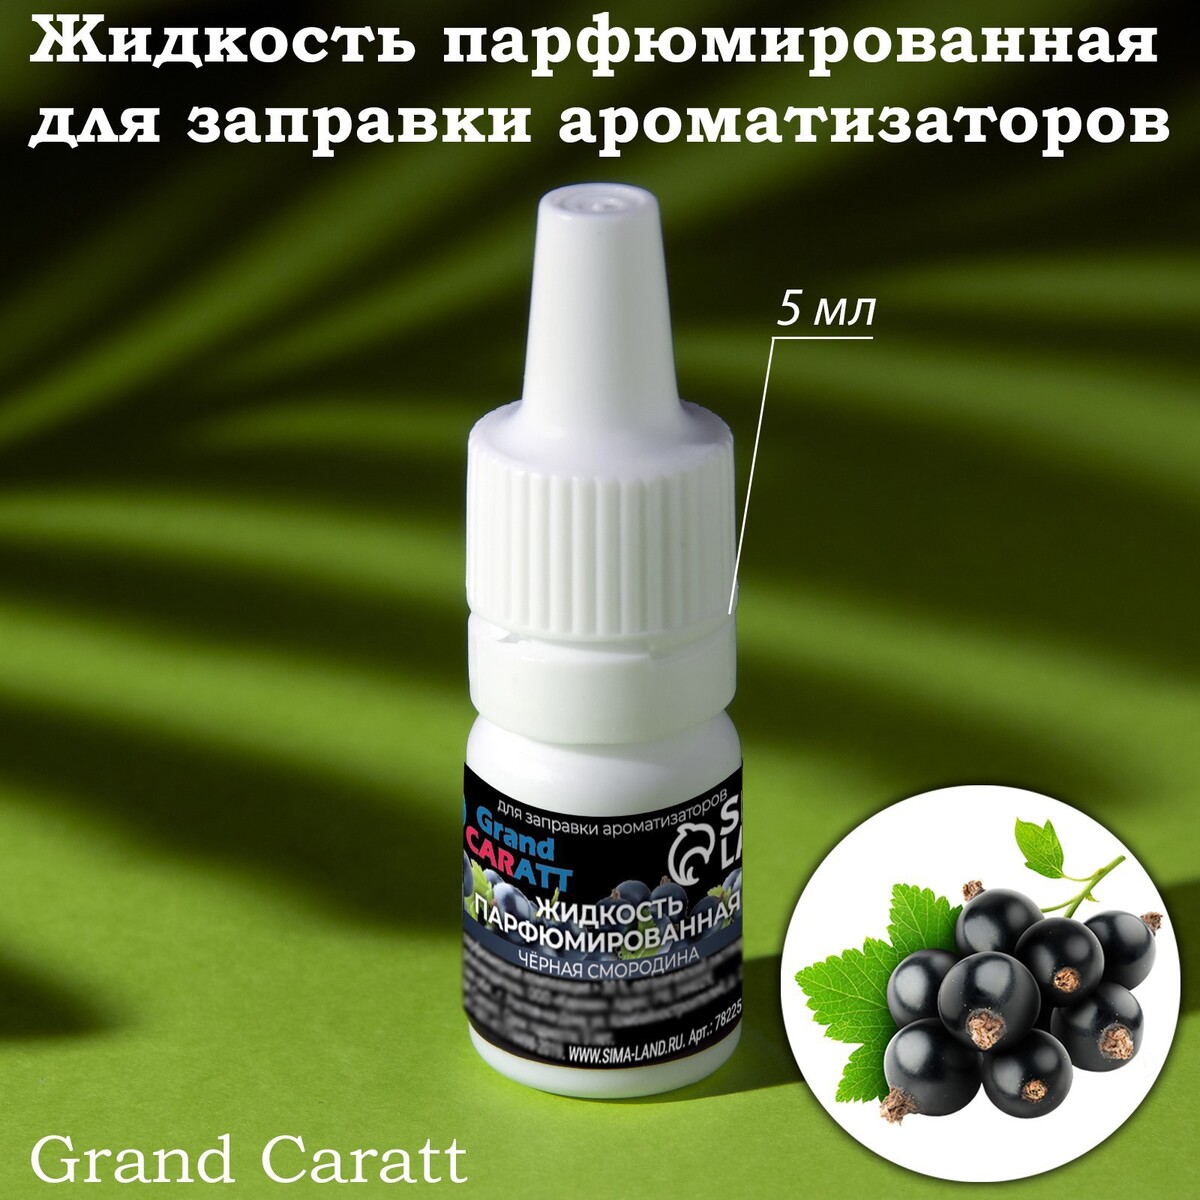 Жидкость парфюмированная grand caratt, для заправки ароматизаторов, черная смородина, 5 мл жидкость парфюмированная grand caratt для заправки ароматизаторов виноград 5 мл